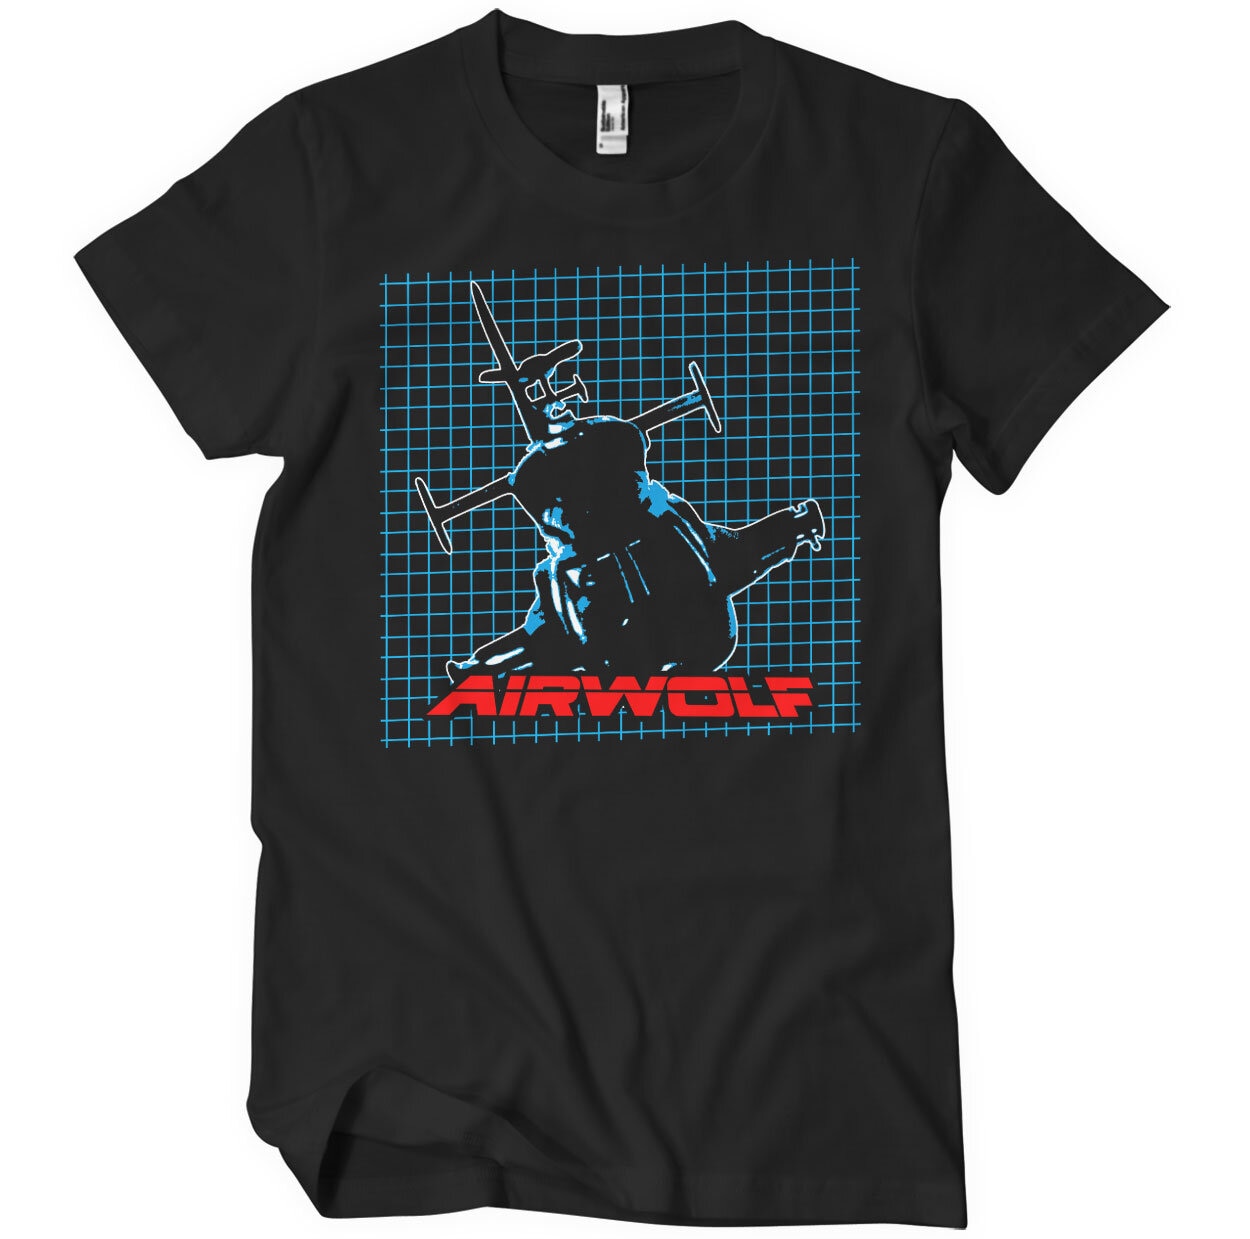 Airwolf Grid T-Shirt